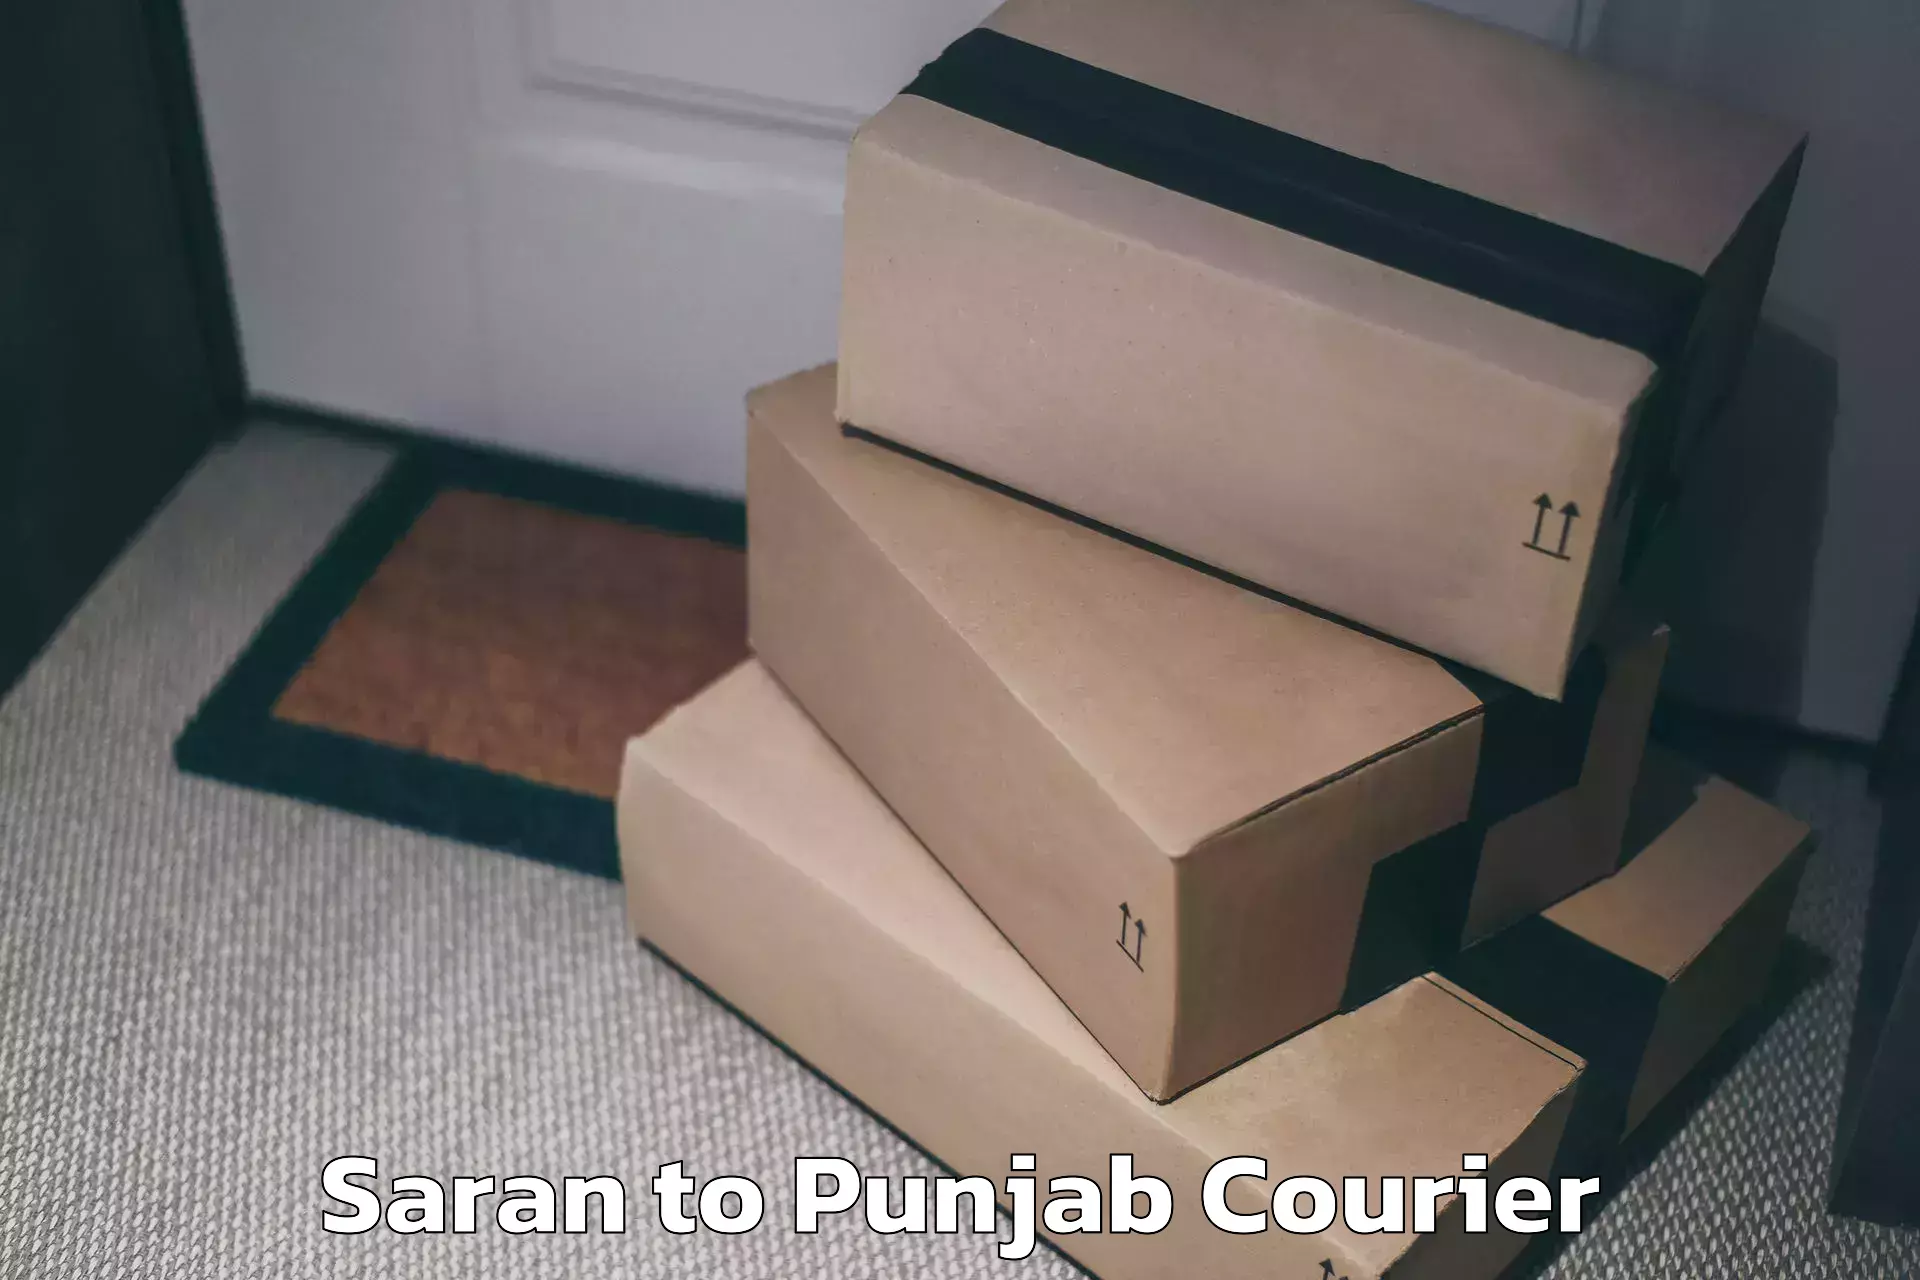 Baggage transport network Saran to Punjab